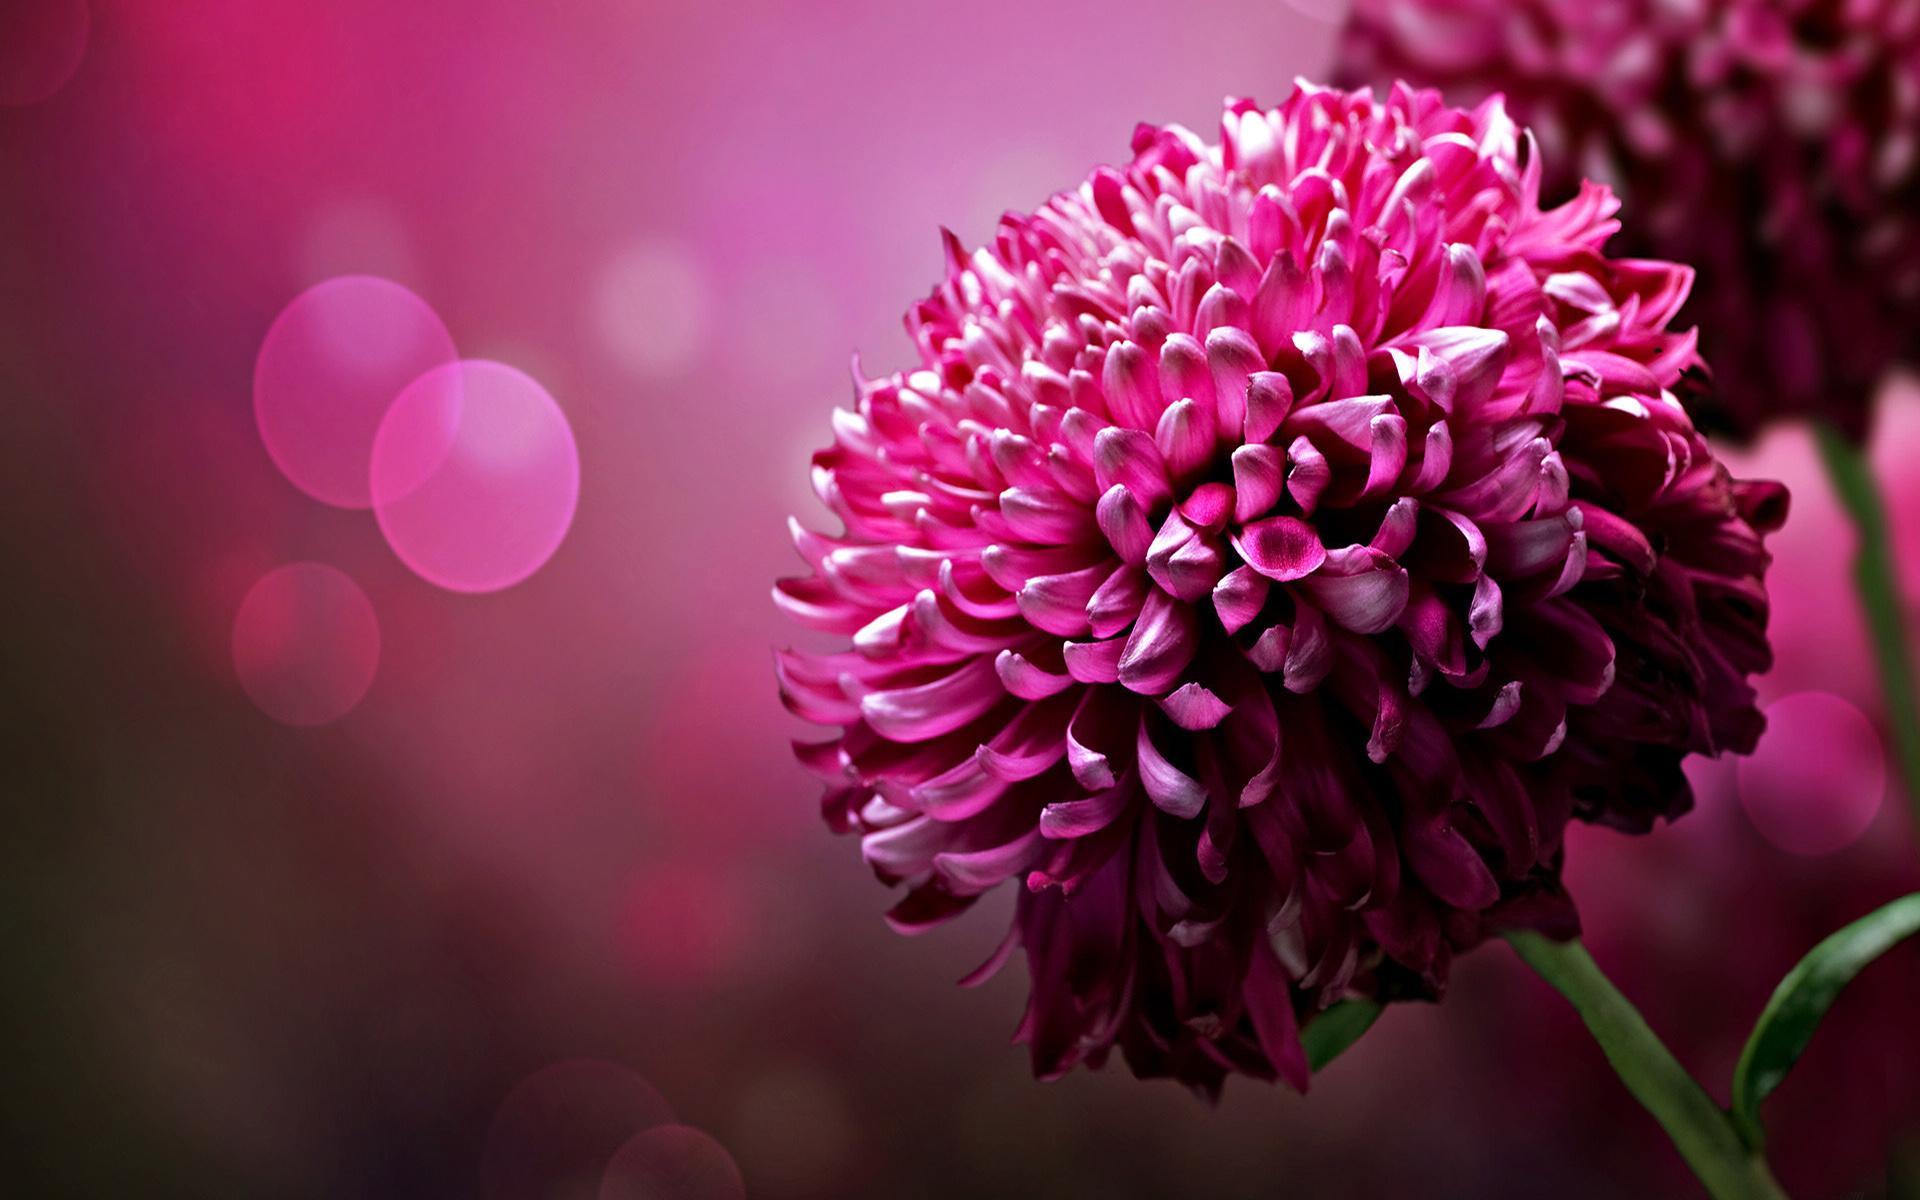 Desktop Wallpaper: Purple Chrysanthemum Flowers Desktop Wallpaper Hd Free Xpx 1920x1200px